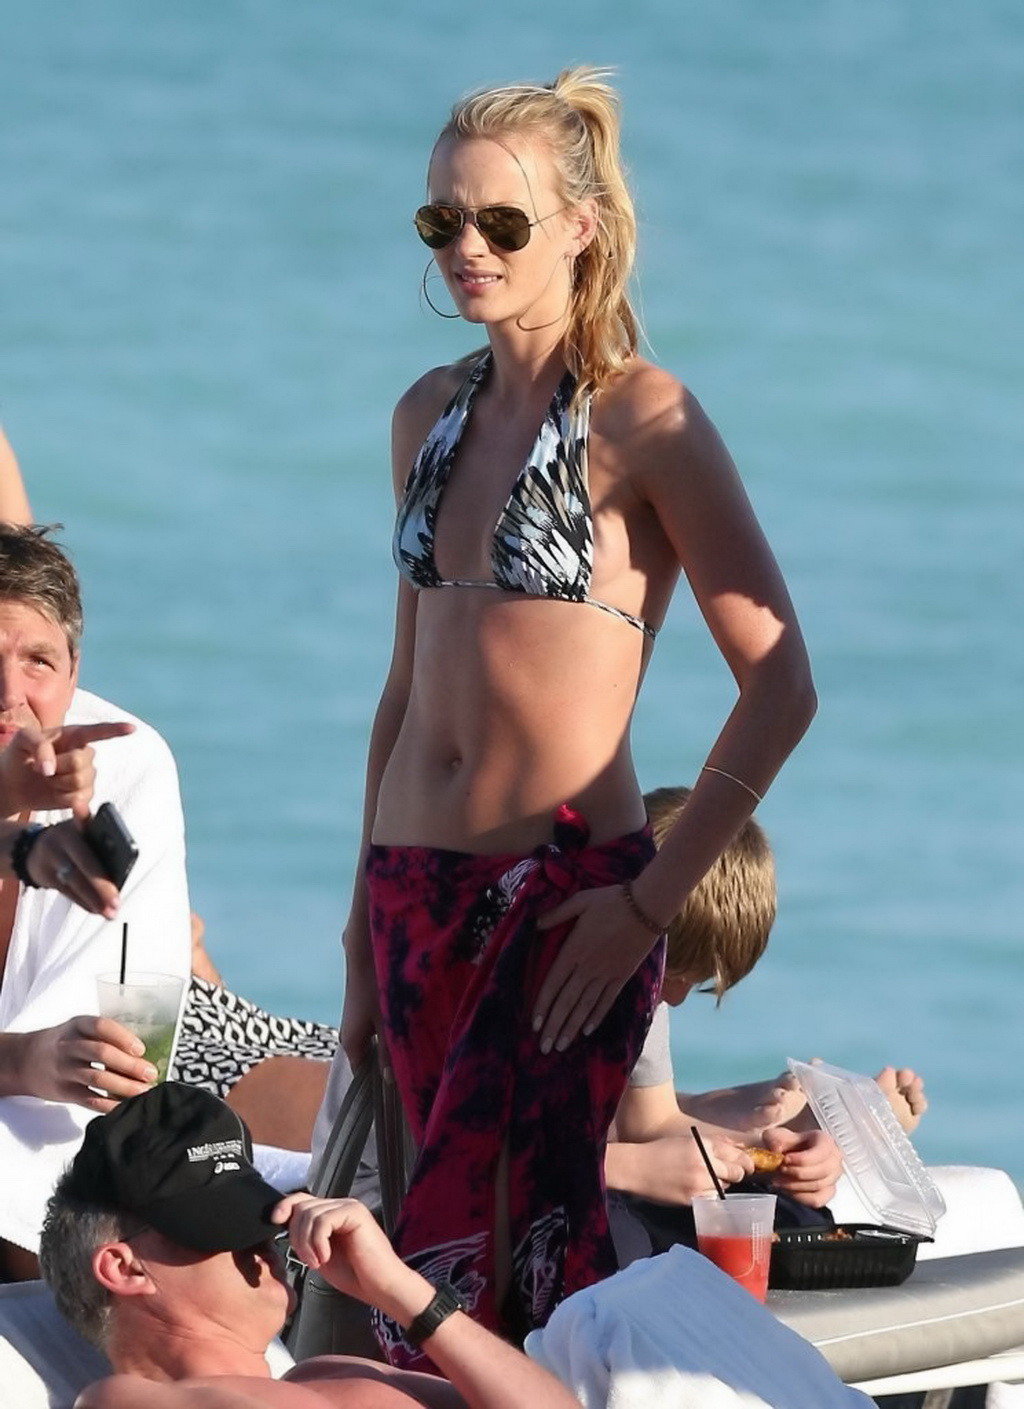 Anne vyalitsyna portant un minuscule bikini multicolore sur la plage de Miami.
 #75247611